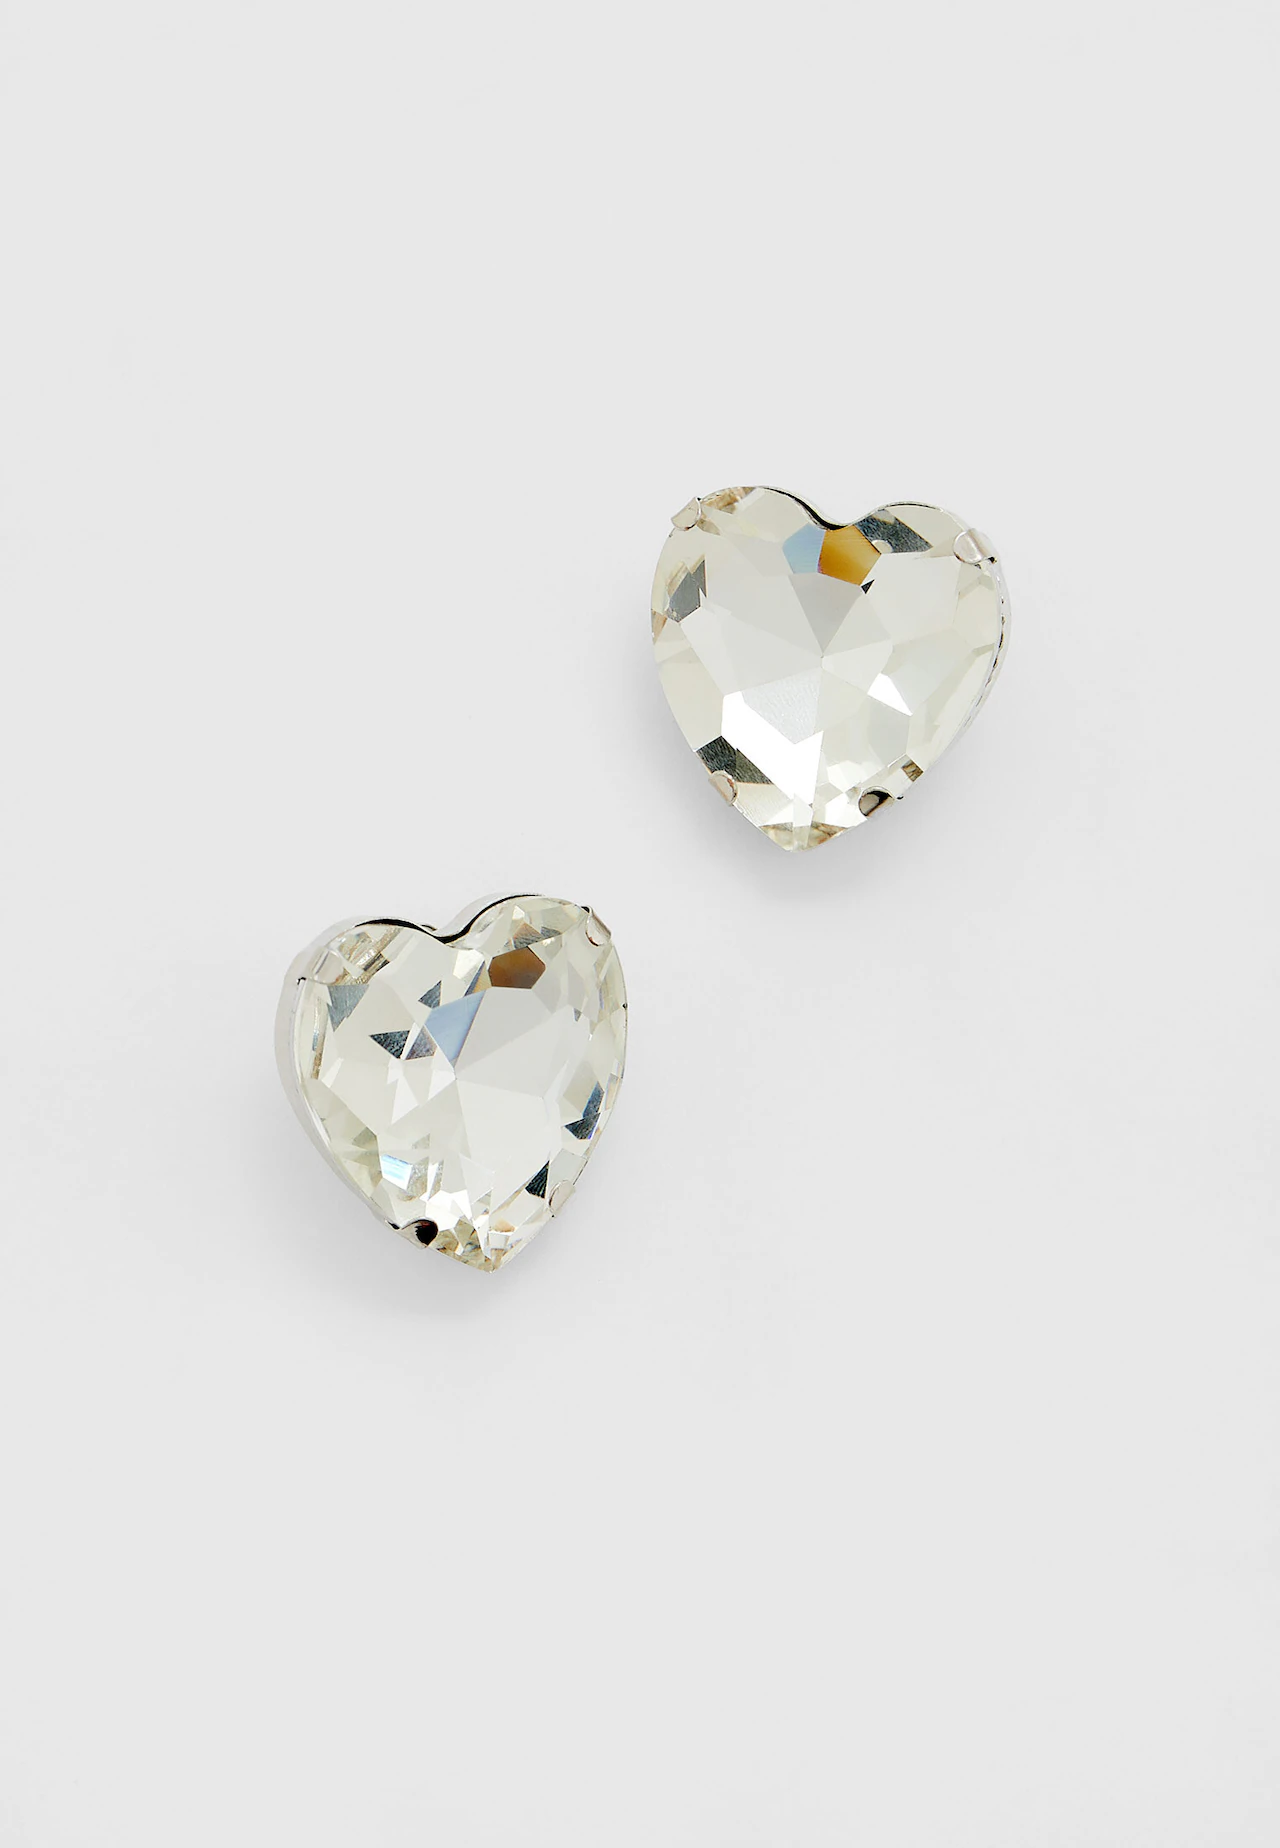 Rhinestone heart earrings - Women's fashion